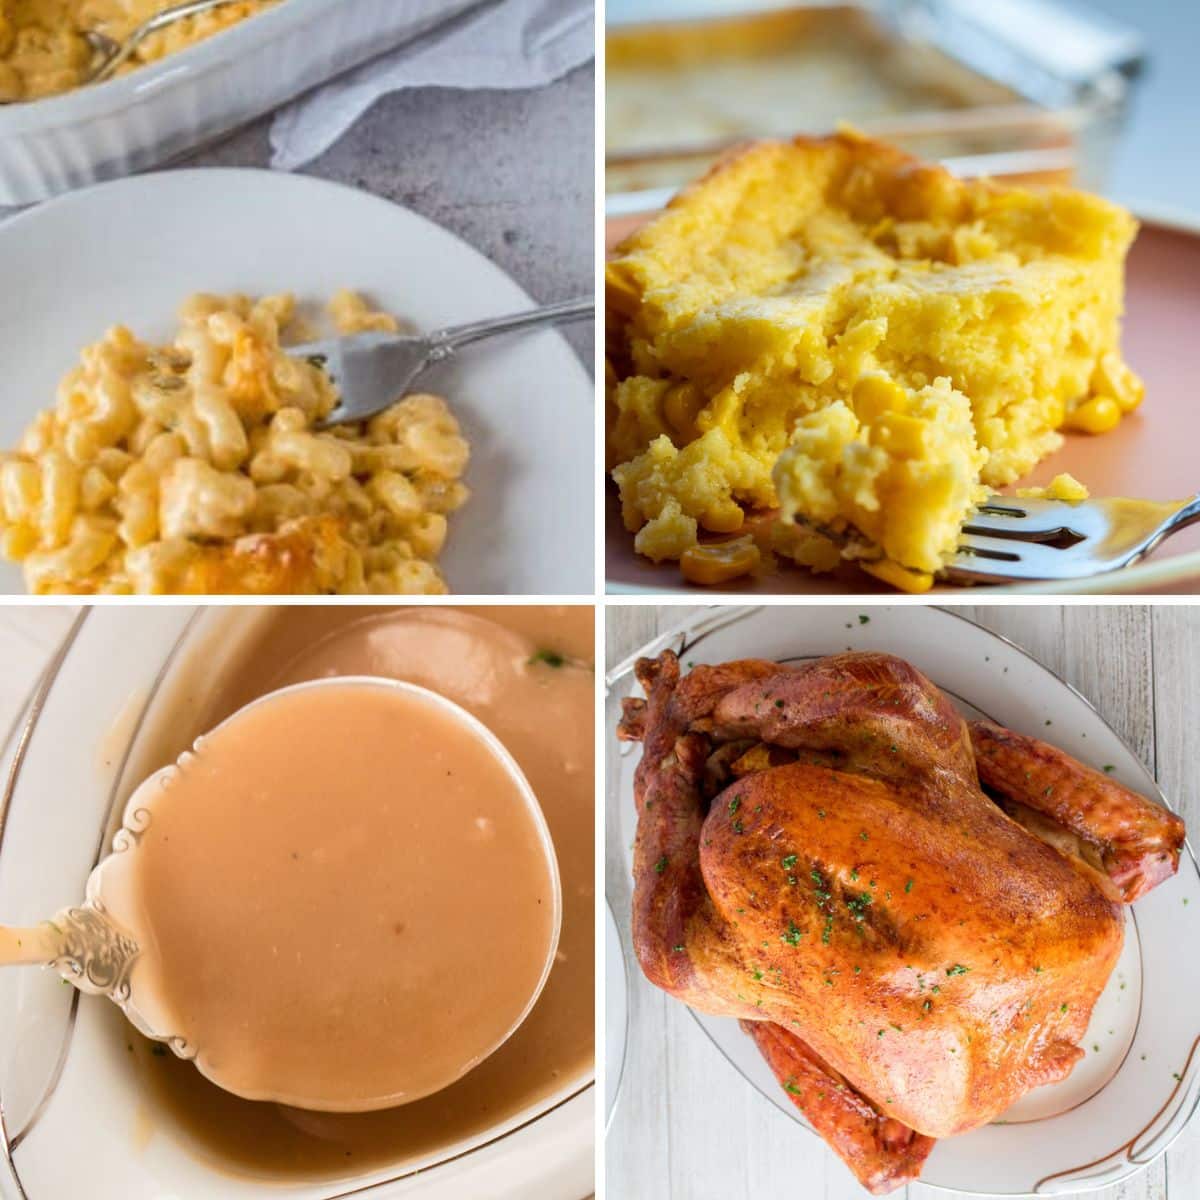 أفكار قائمة عشاء عيد الشكر الجنوبي تتميز بأربعة صور مجمعة.